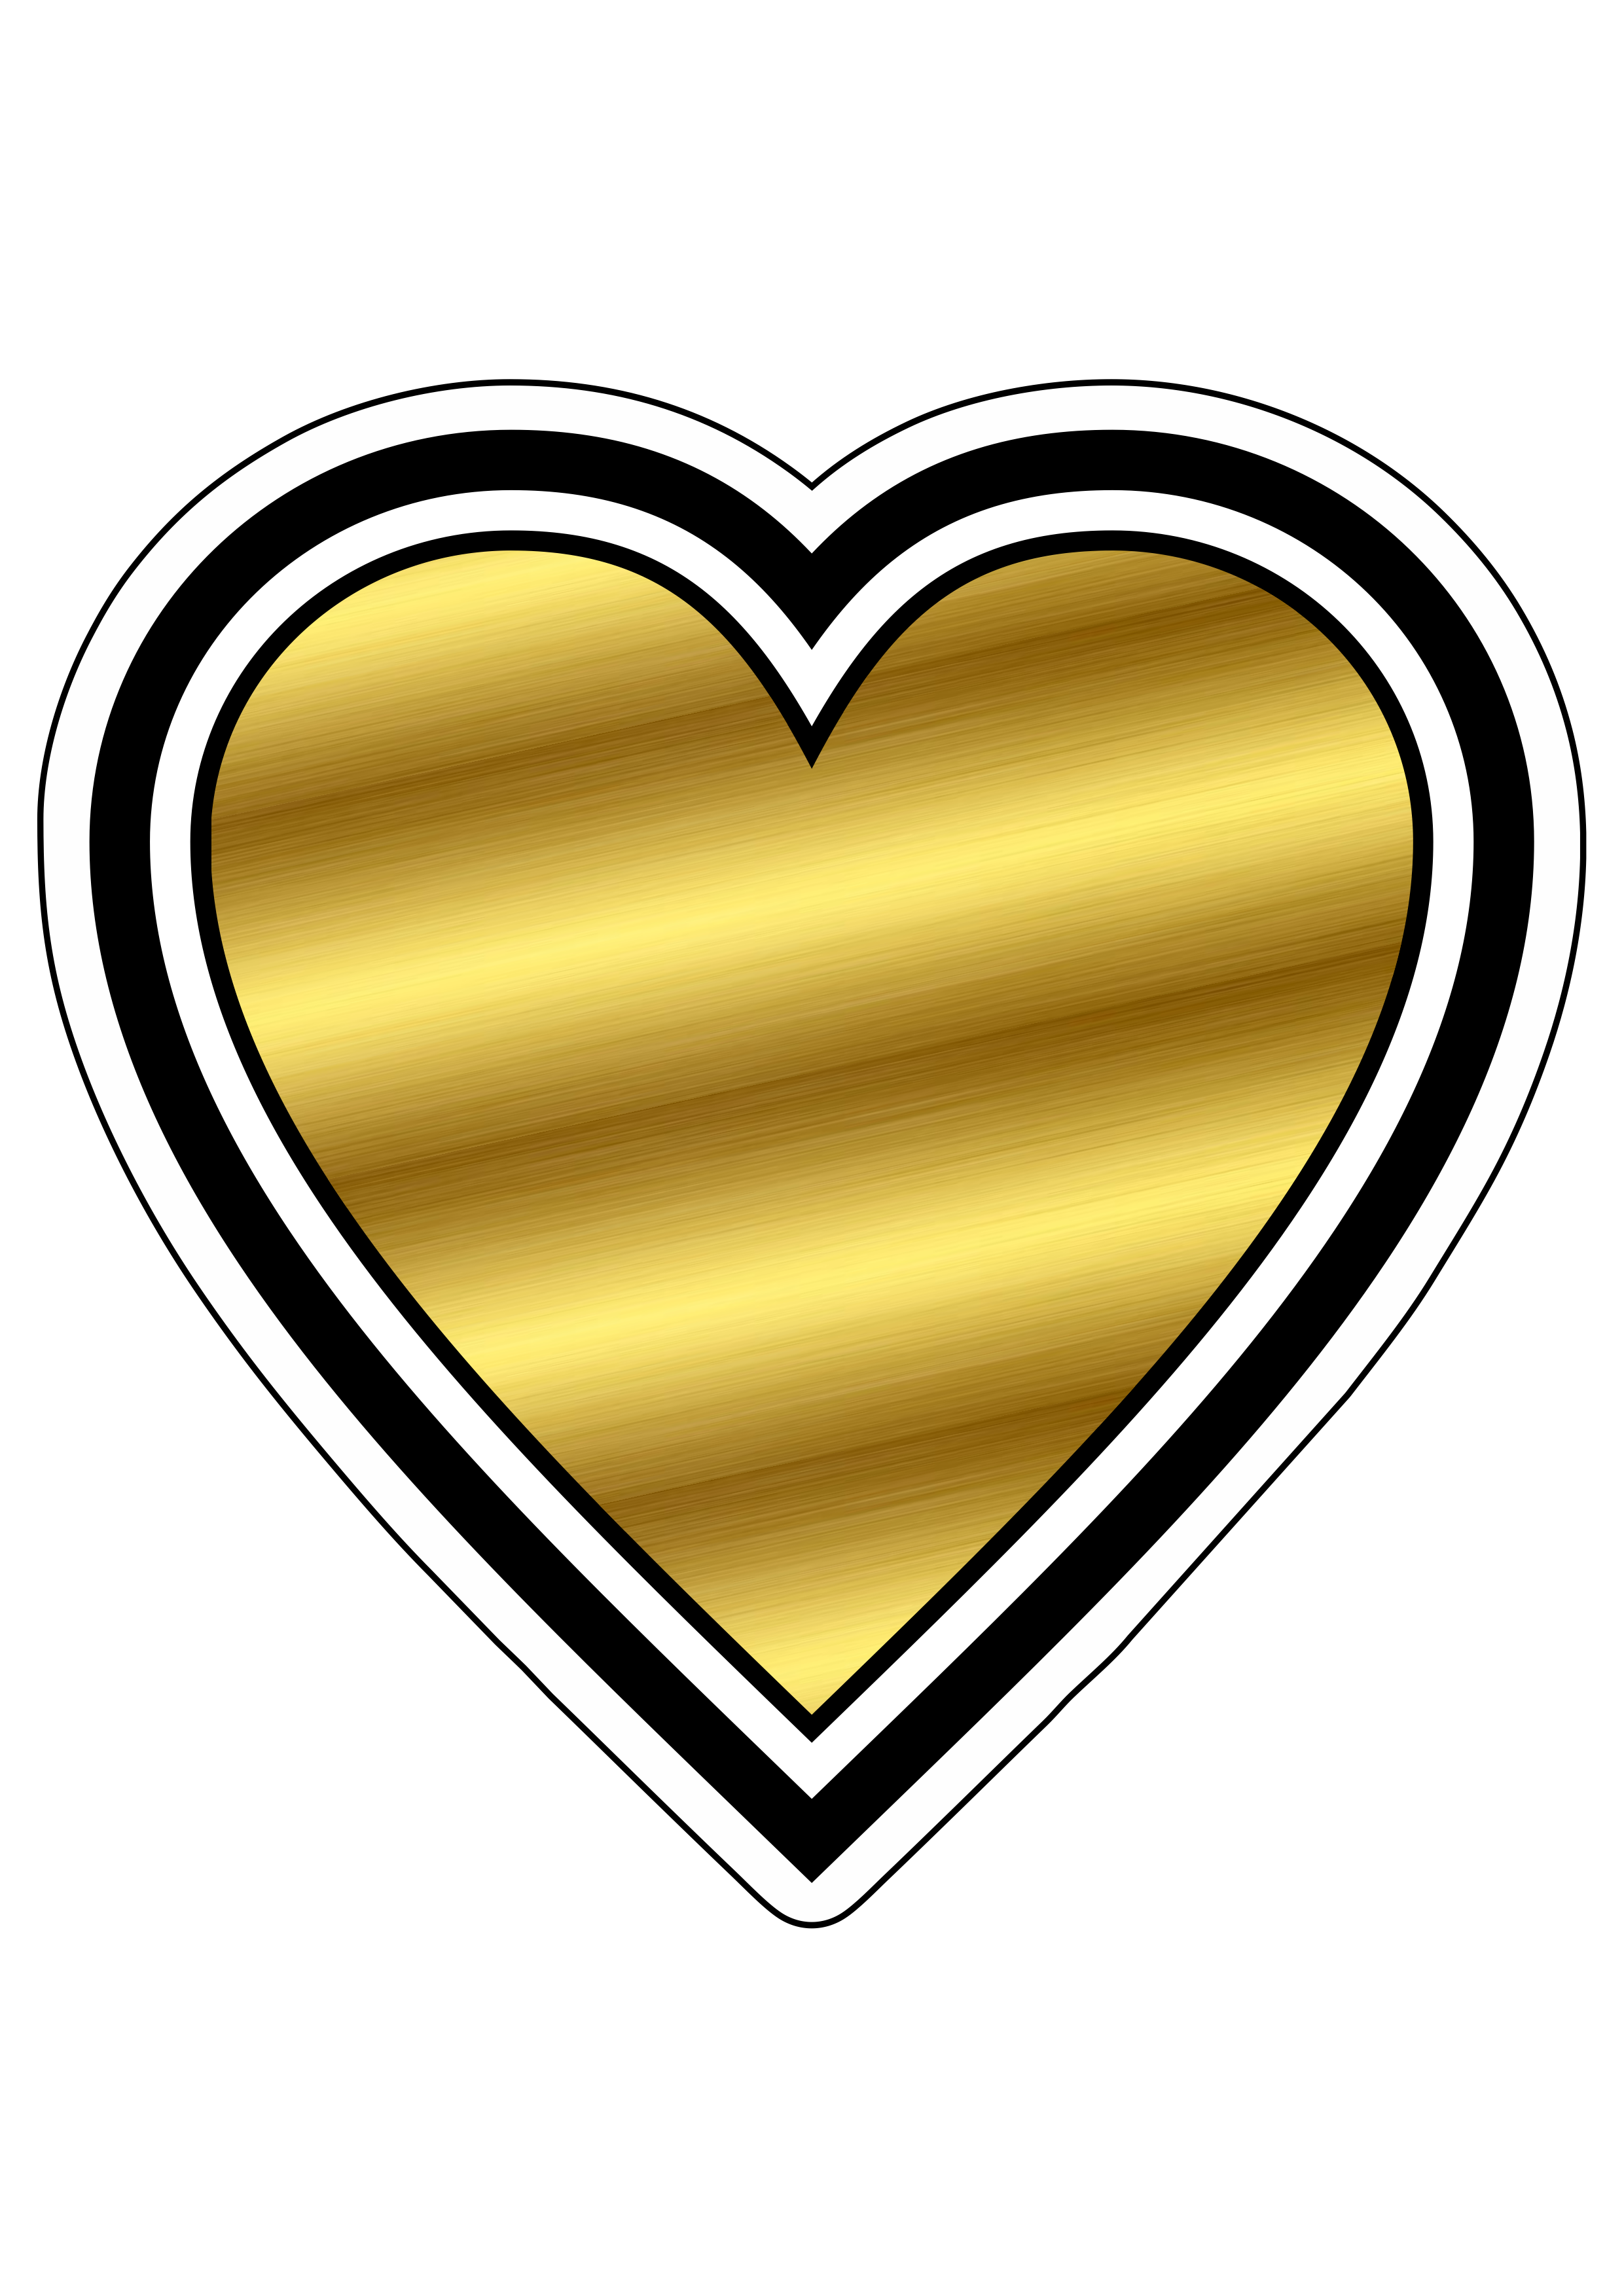 Coração dourado com contorno adesivo tag sticker decoração de festas temáticas png